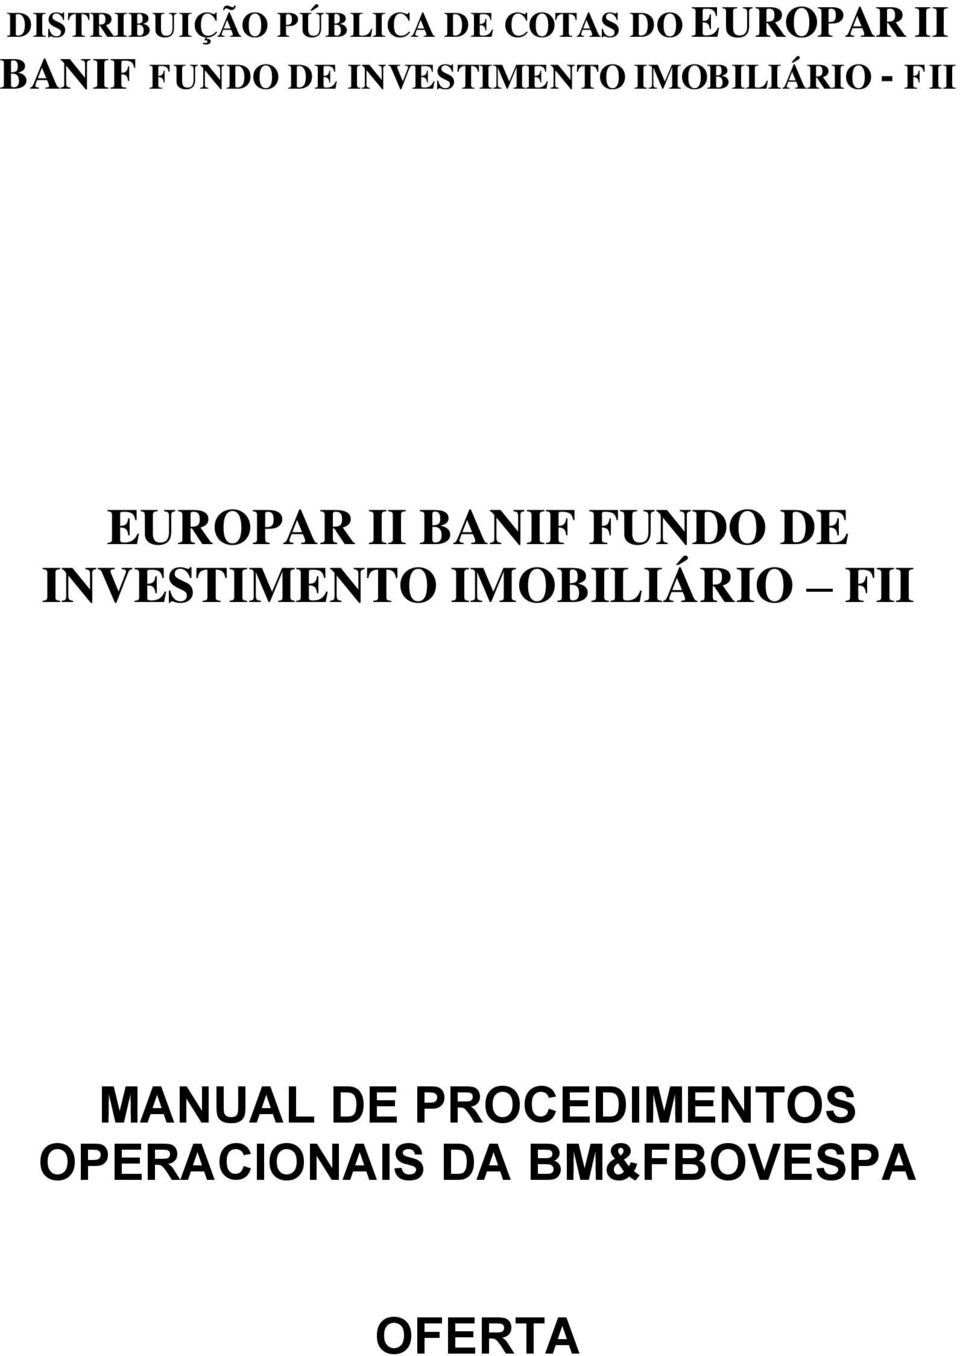 BANIF FUNDO DE INVESTIMENTO IMOBILIÁRIO FII MANUAL